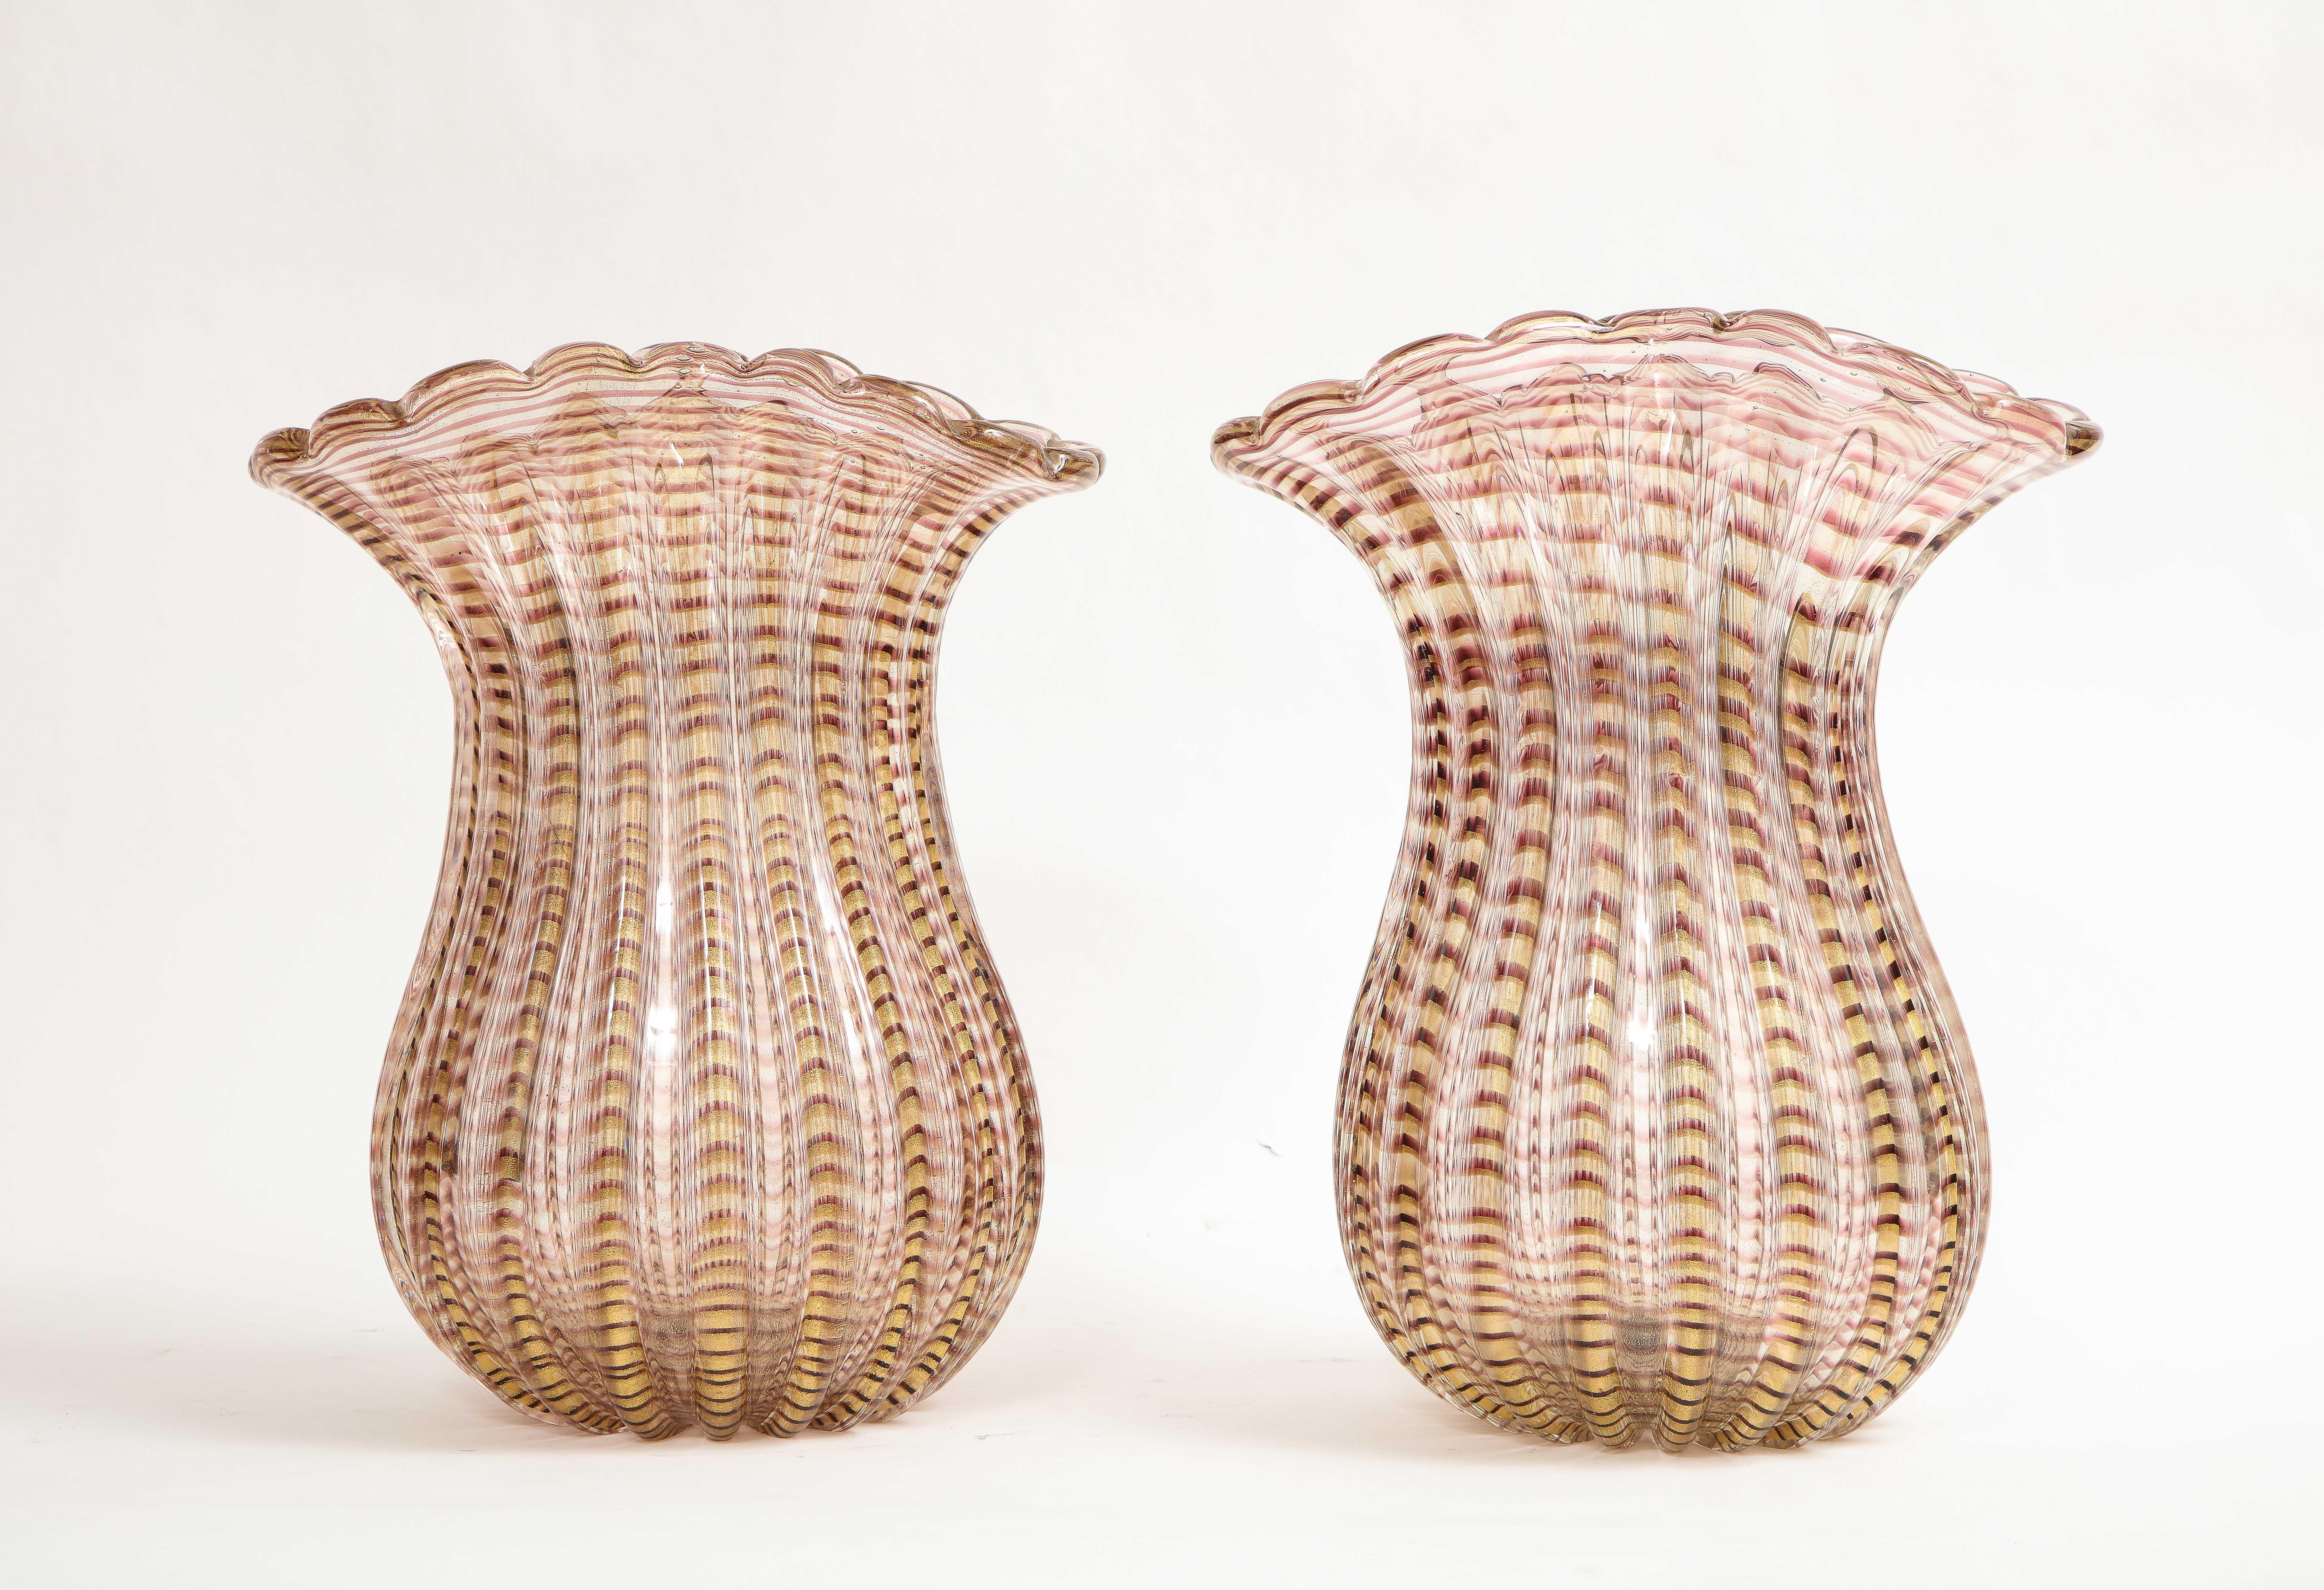 Paire de grands vases en verre soufflé strié, jaune et transparent de Murano, italiens et modernes du milieu du siècle.  Chacun d'entre eux est magnifiquement soufflé et découpé à la main pour former ces merveilleux vases qui sont superbes en termes